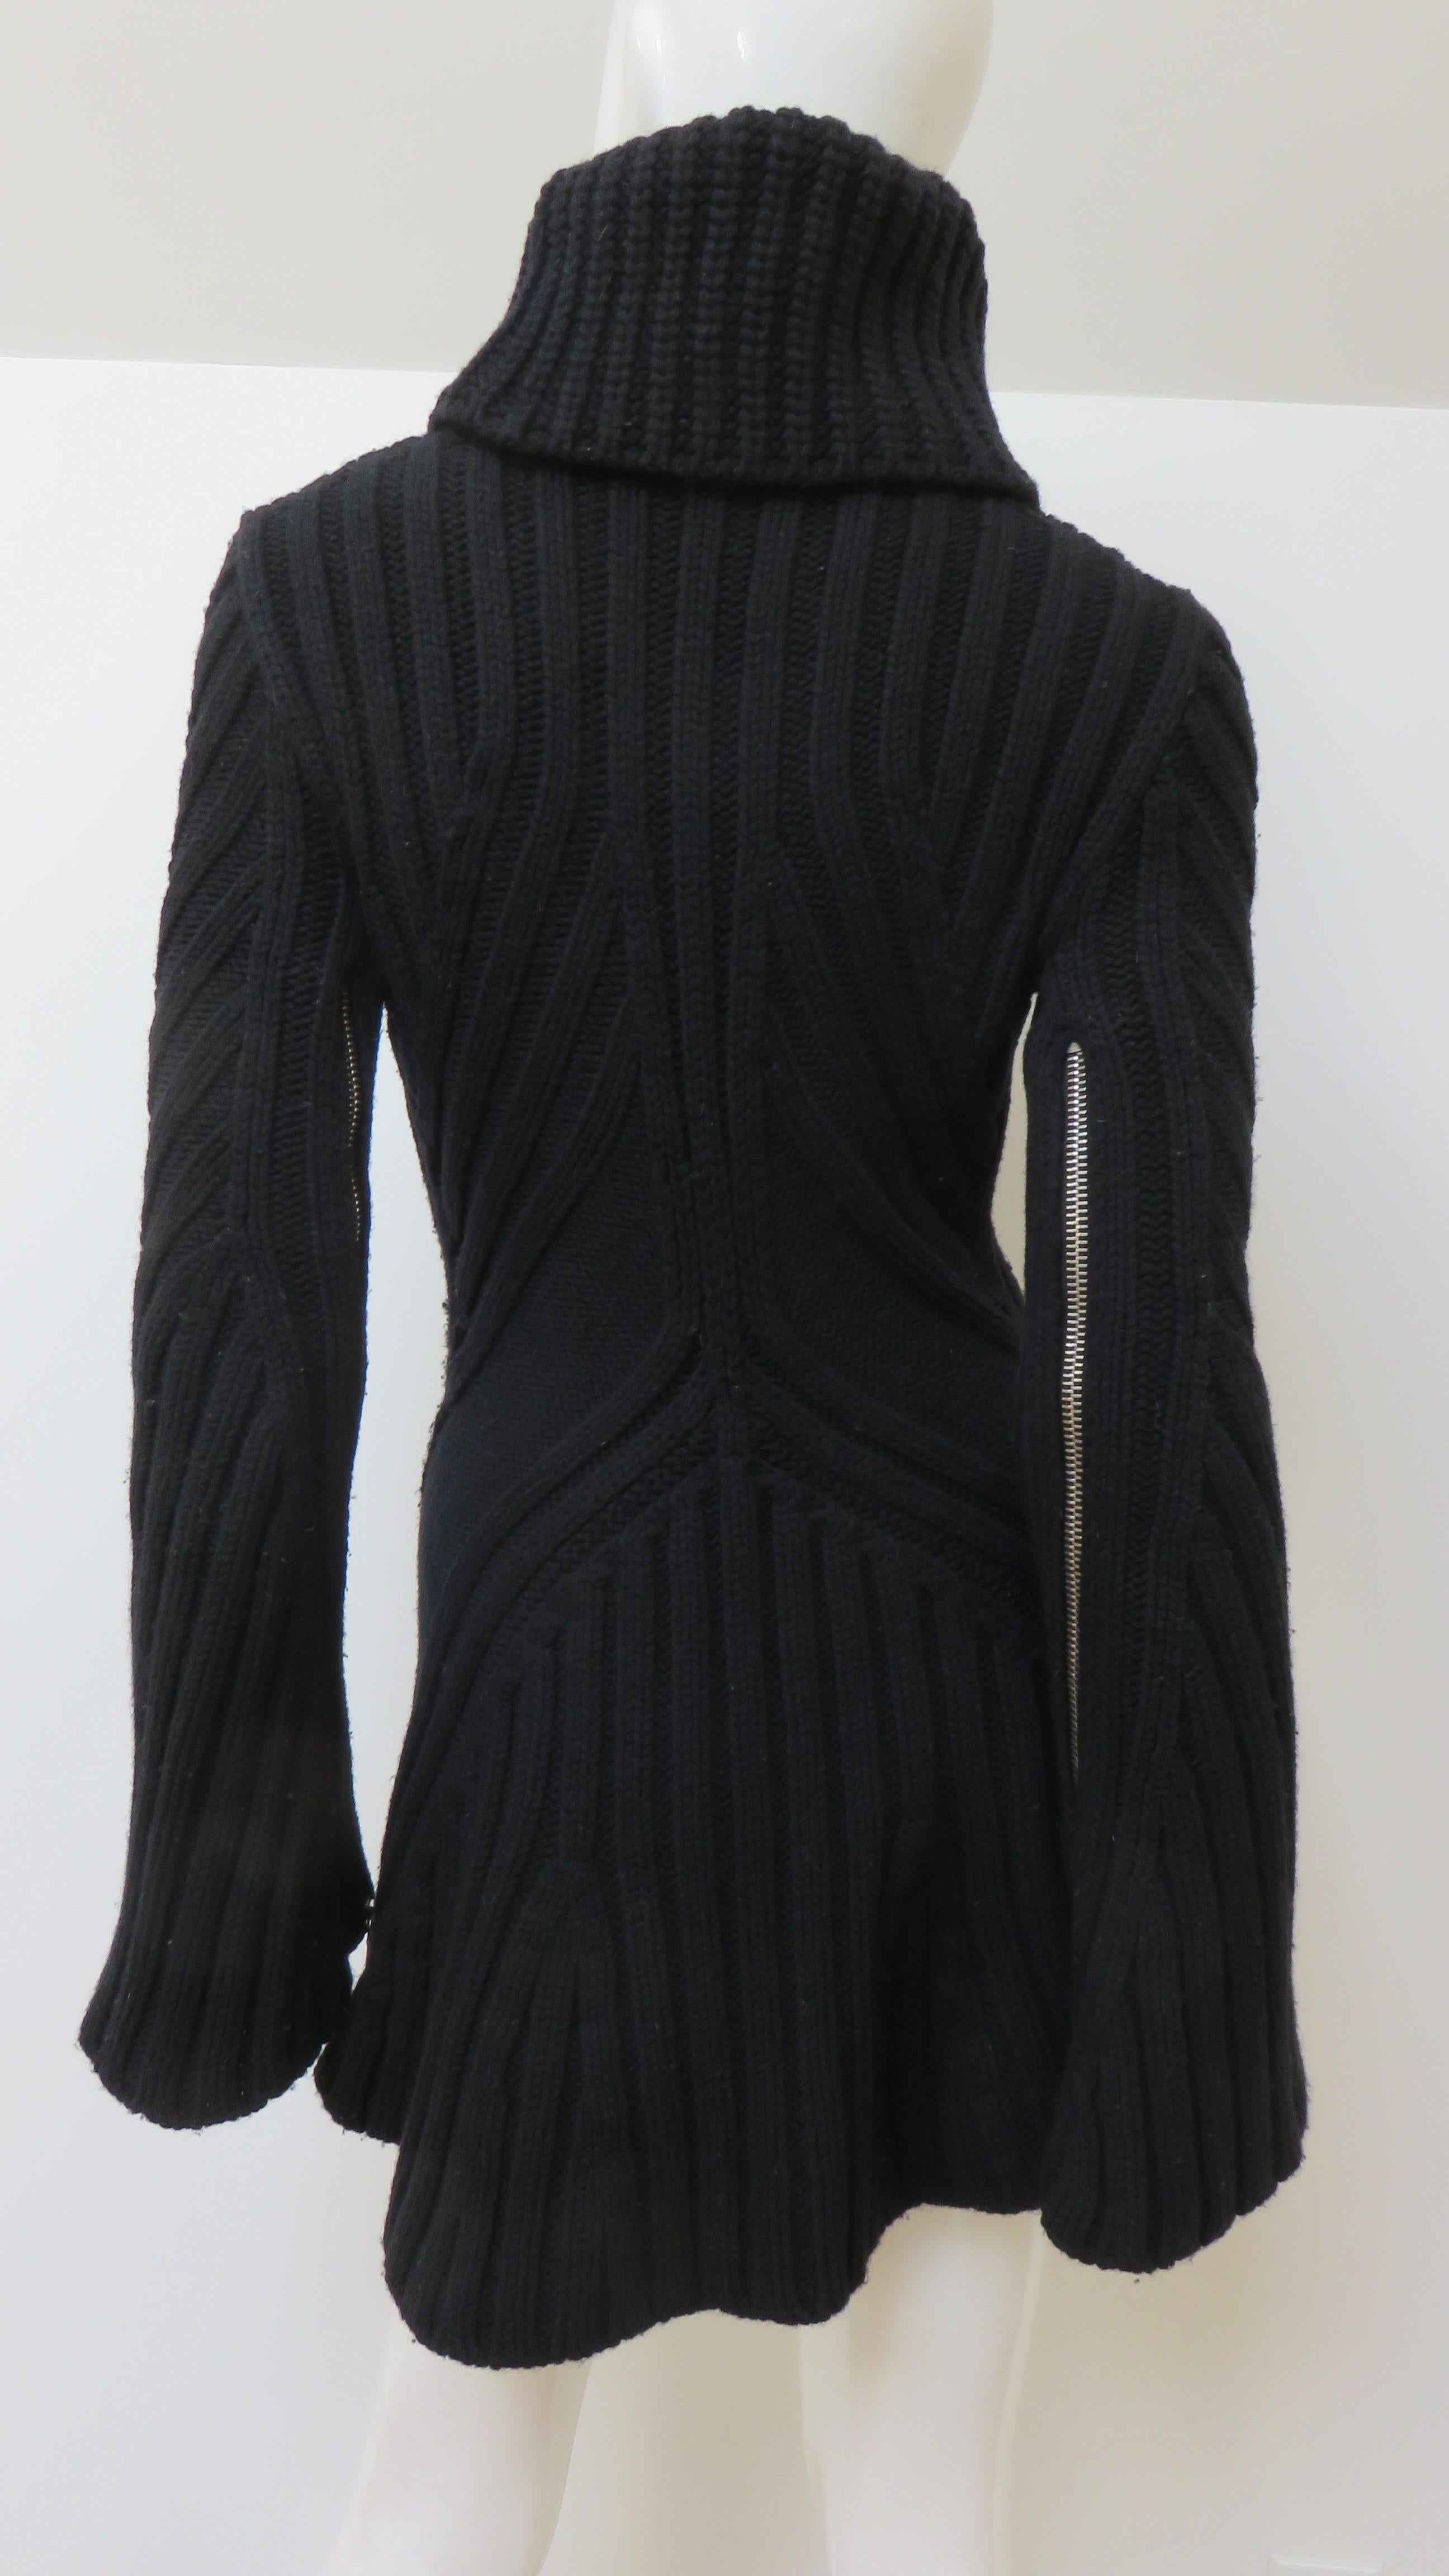 Alexander McQueen Turtleneck Sweater with Zippers 5